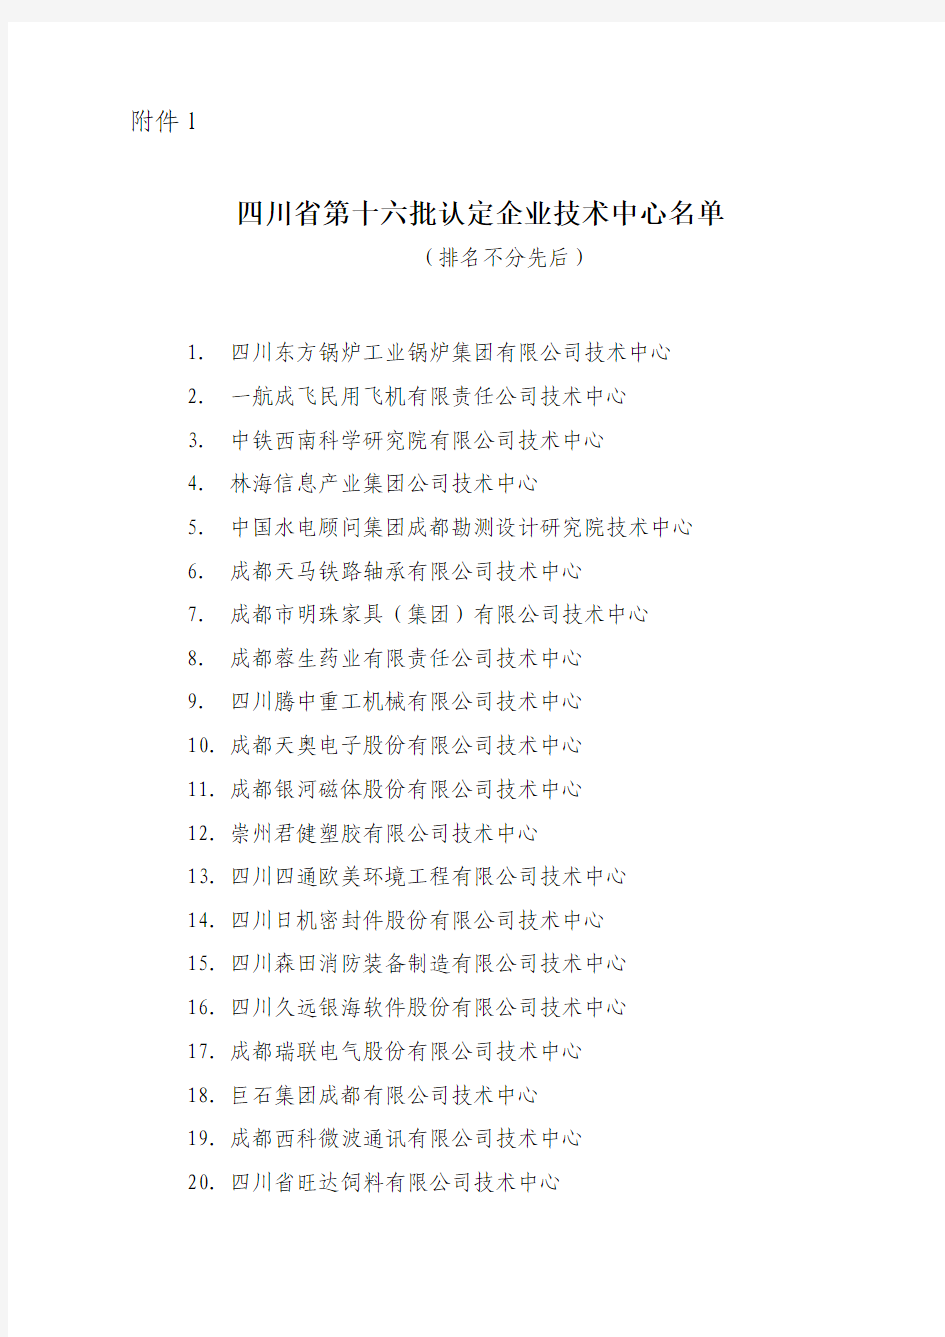 四川国家级和省级技术中心名单